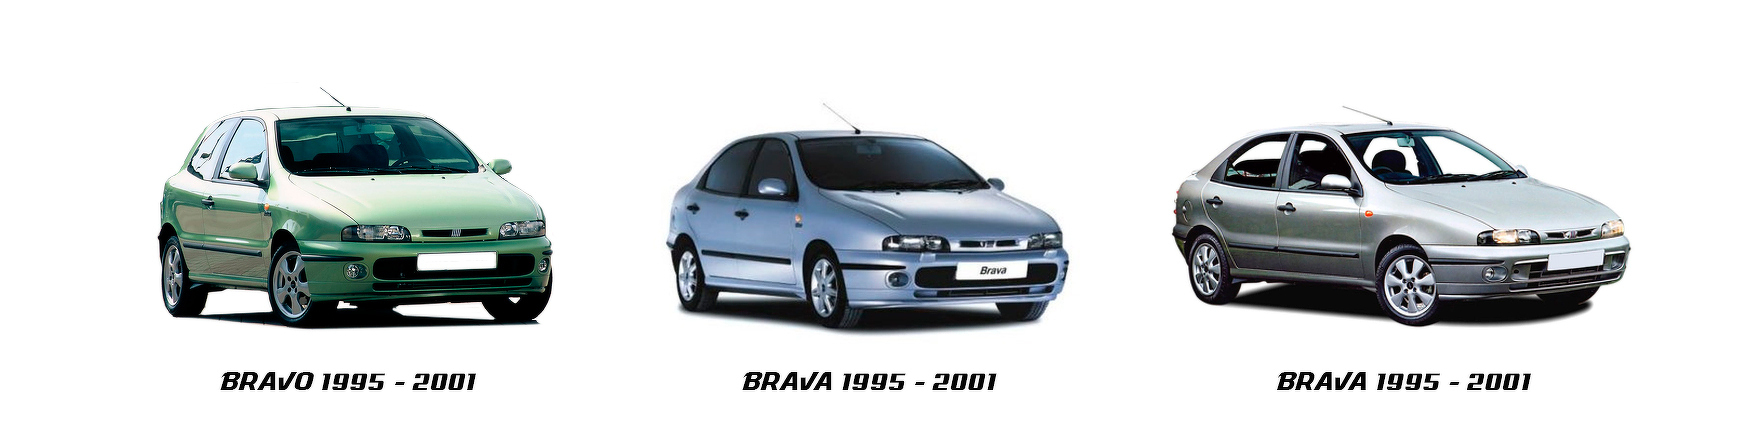 Recambios de Fiat Bravo Brava de 1995 a 2002. Envíos en 24/48 horas.